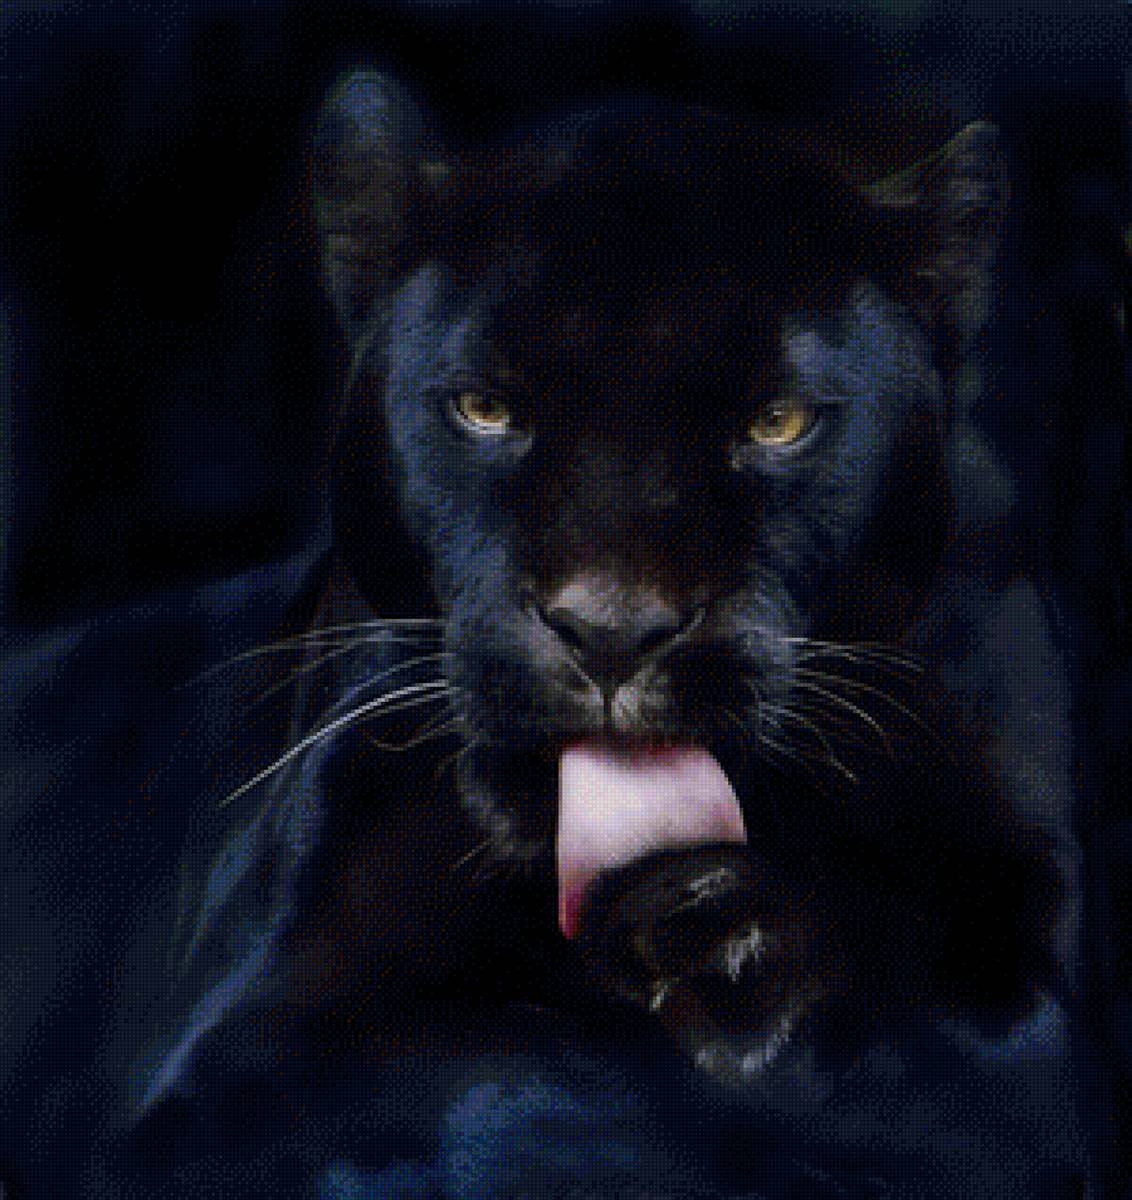 фото пантеры черной красивые